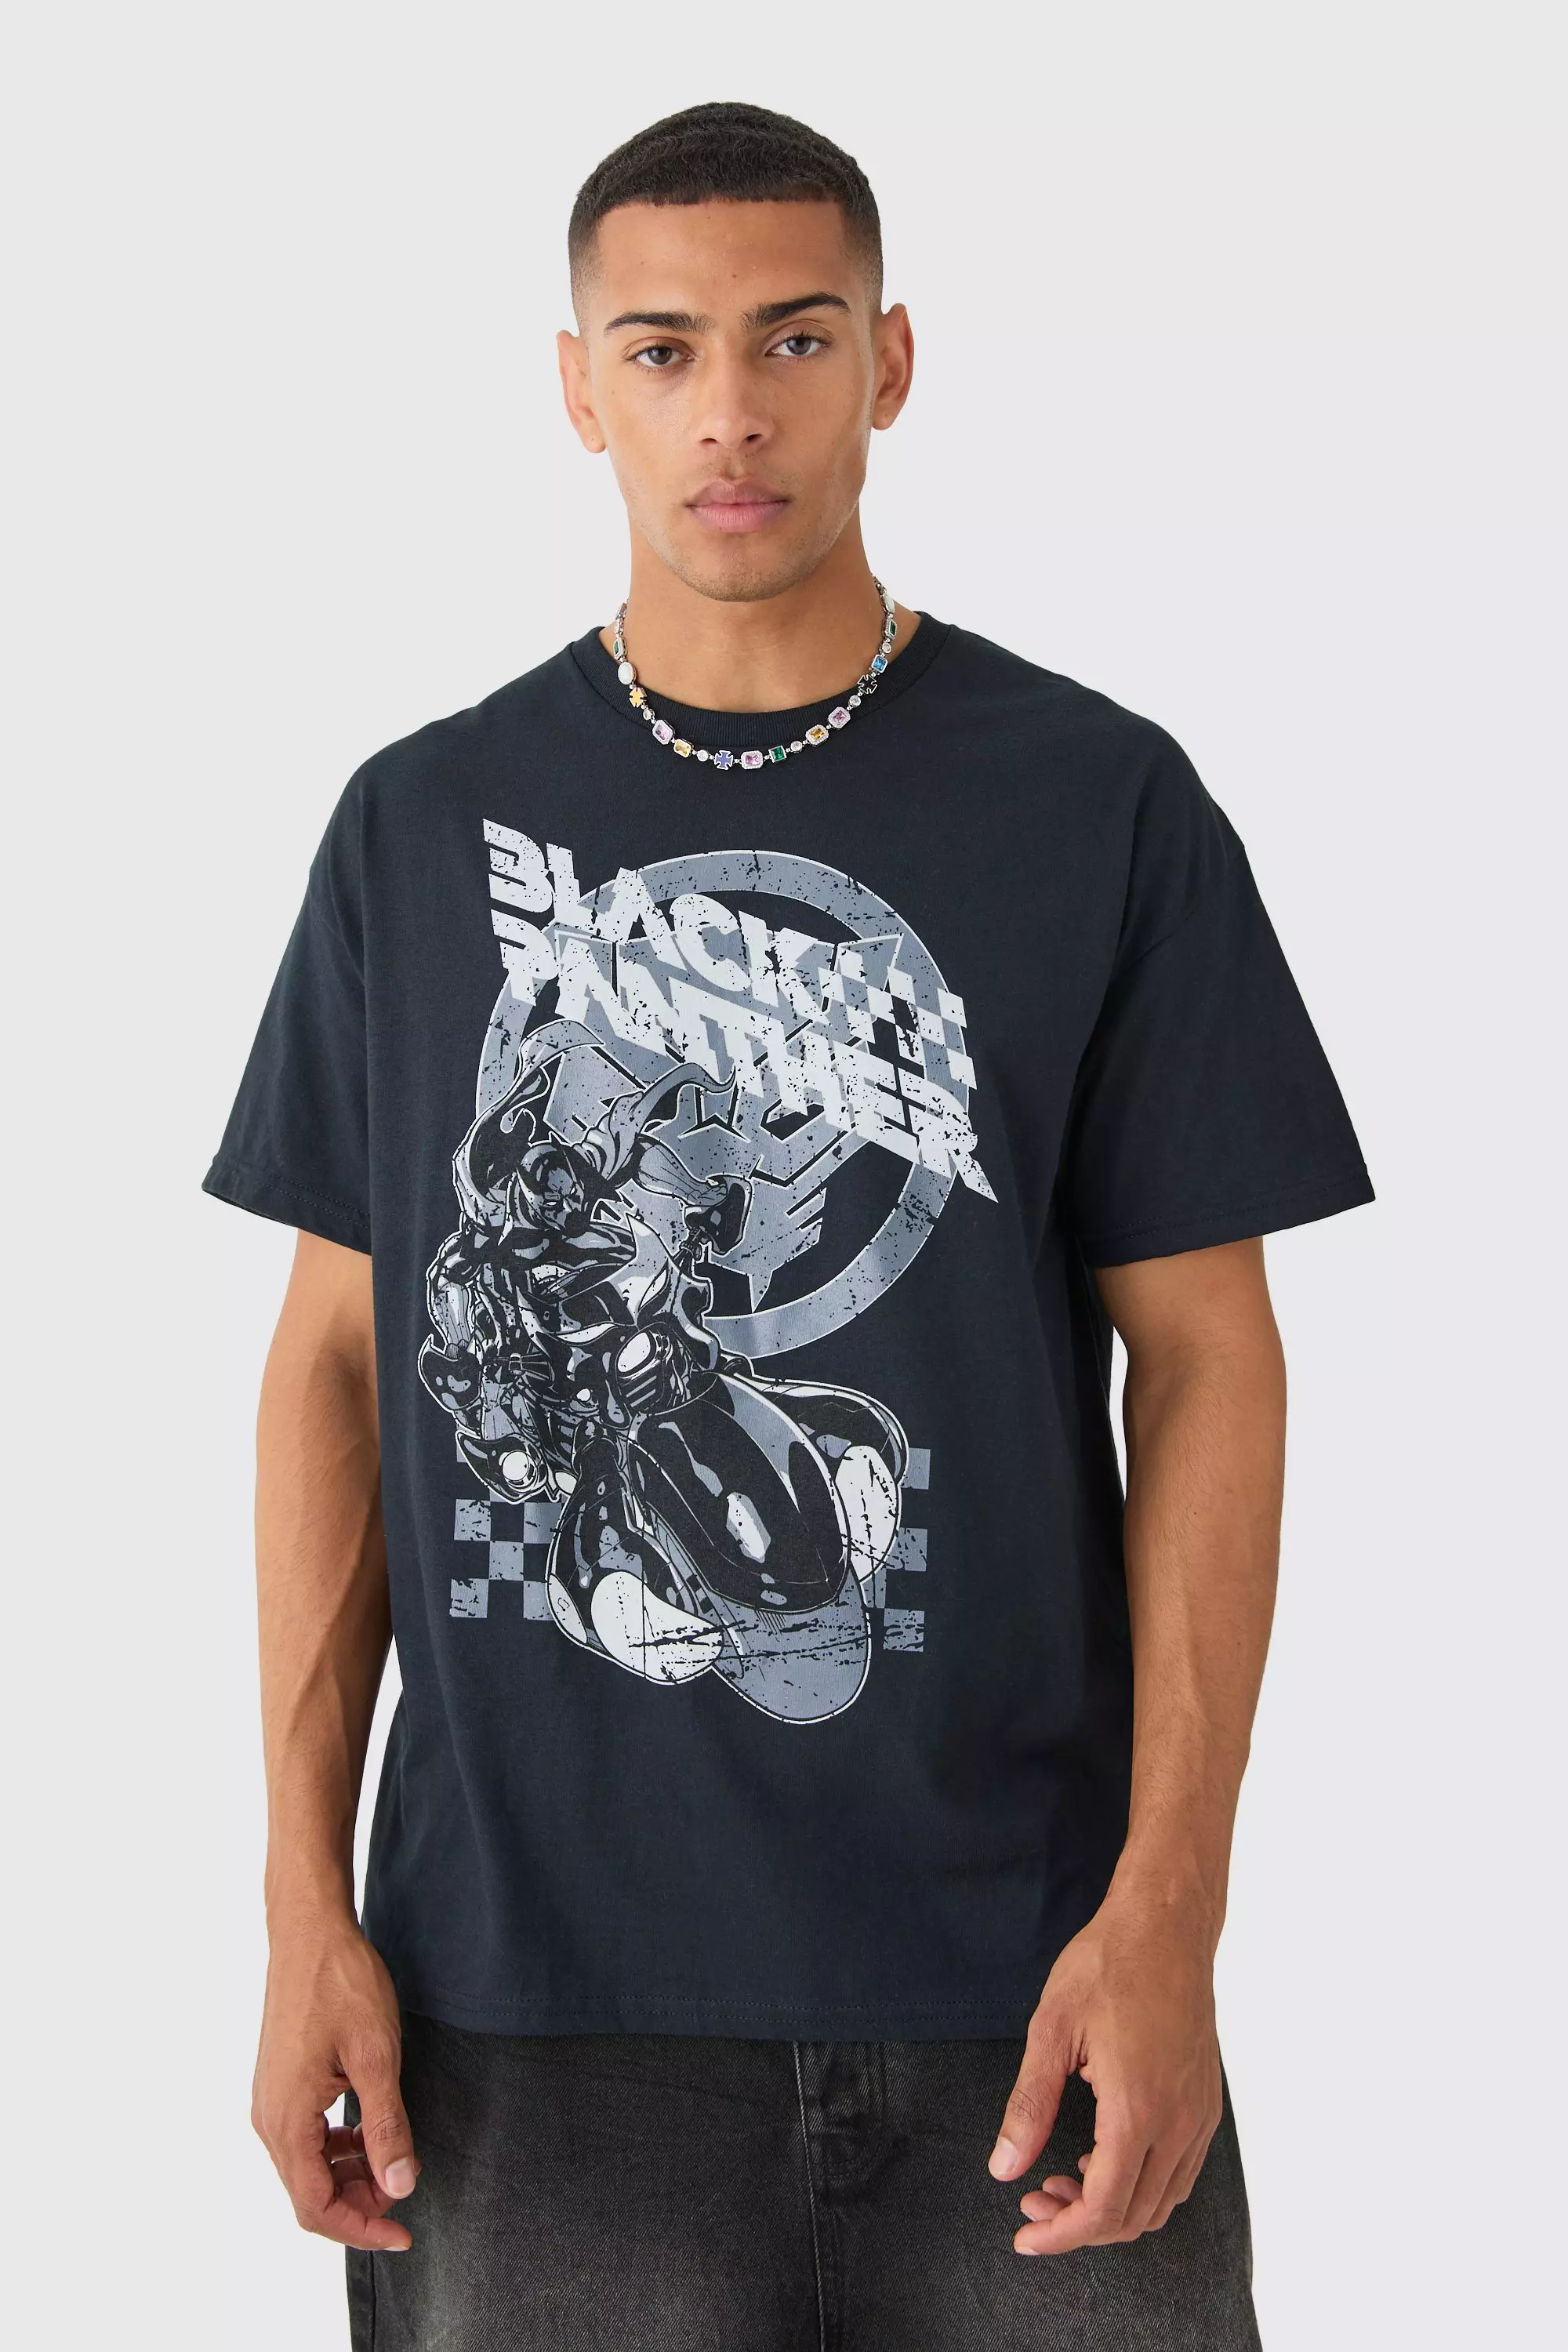 Oversized Black Panther Biker License T-shirt Black